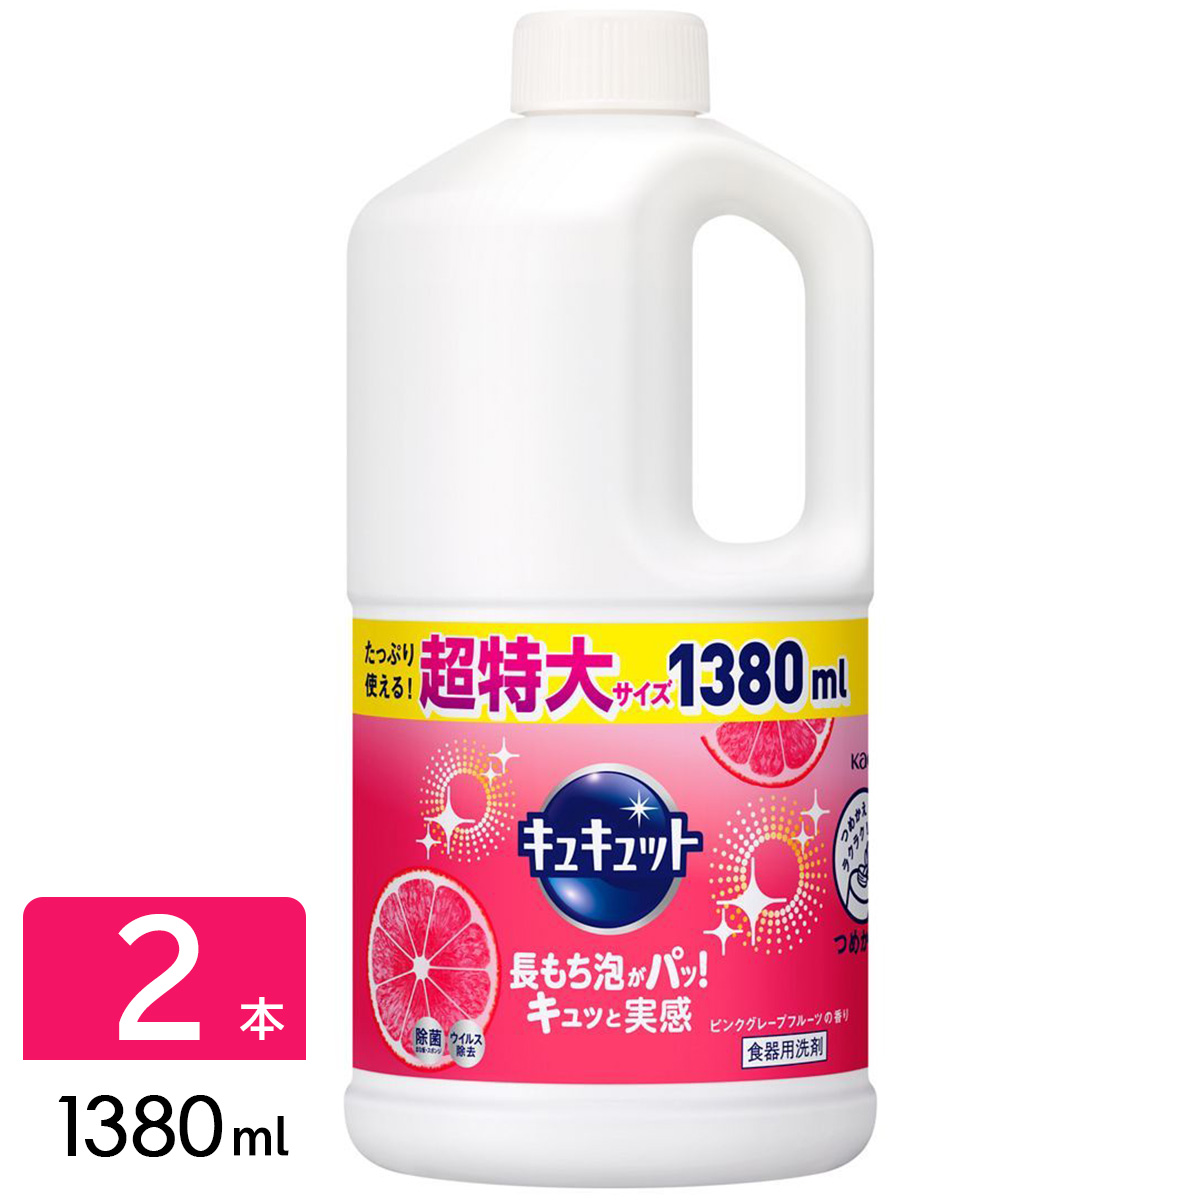 キュキュット 食器用洗剤 ピンクグレープフルーツの香り 詰め替え 1380ml ×2本